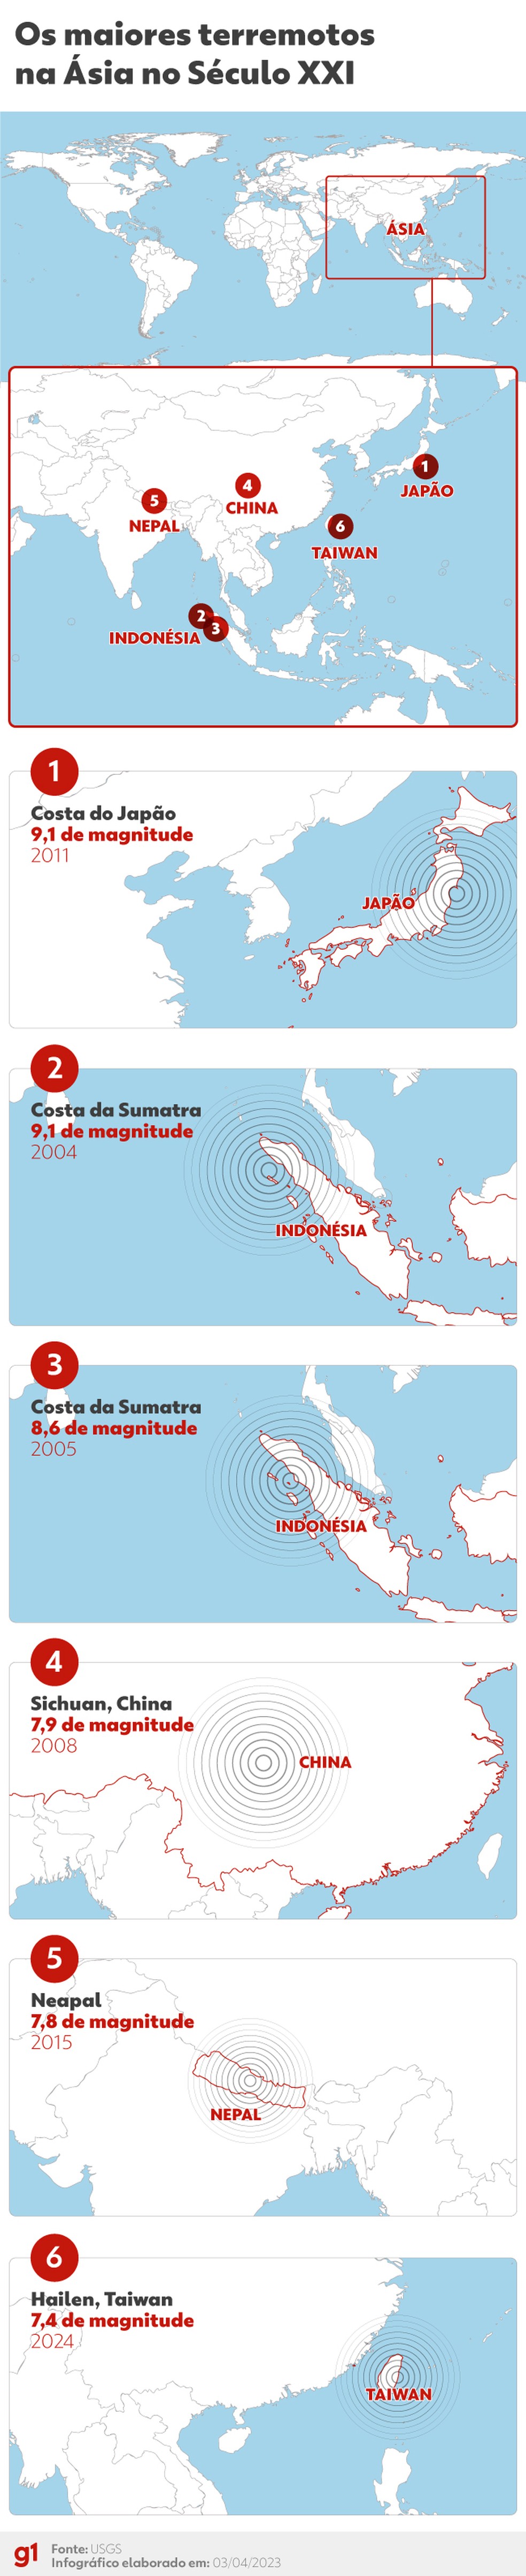 Maiores terremotos da Ásia no Século XXI — Foto: Arte g1